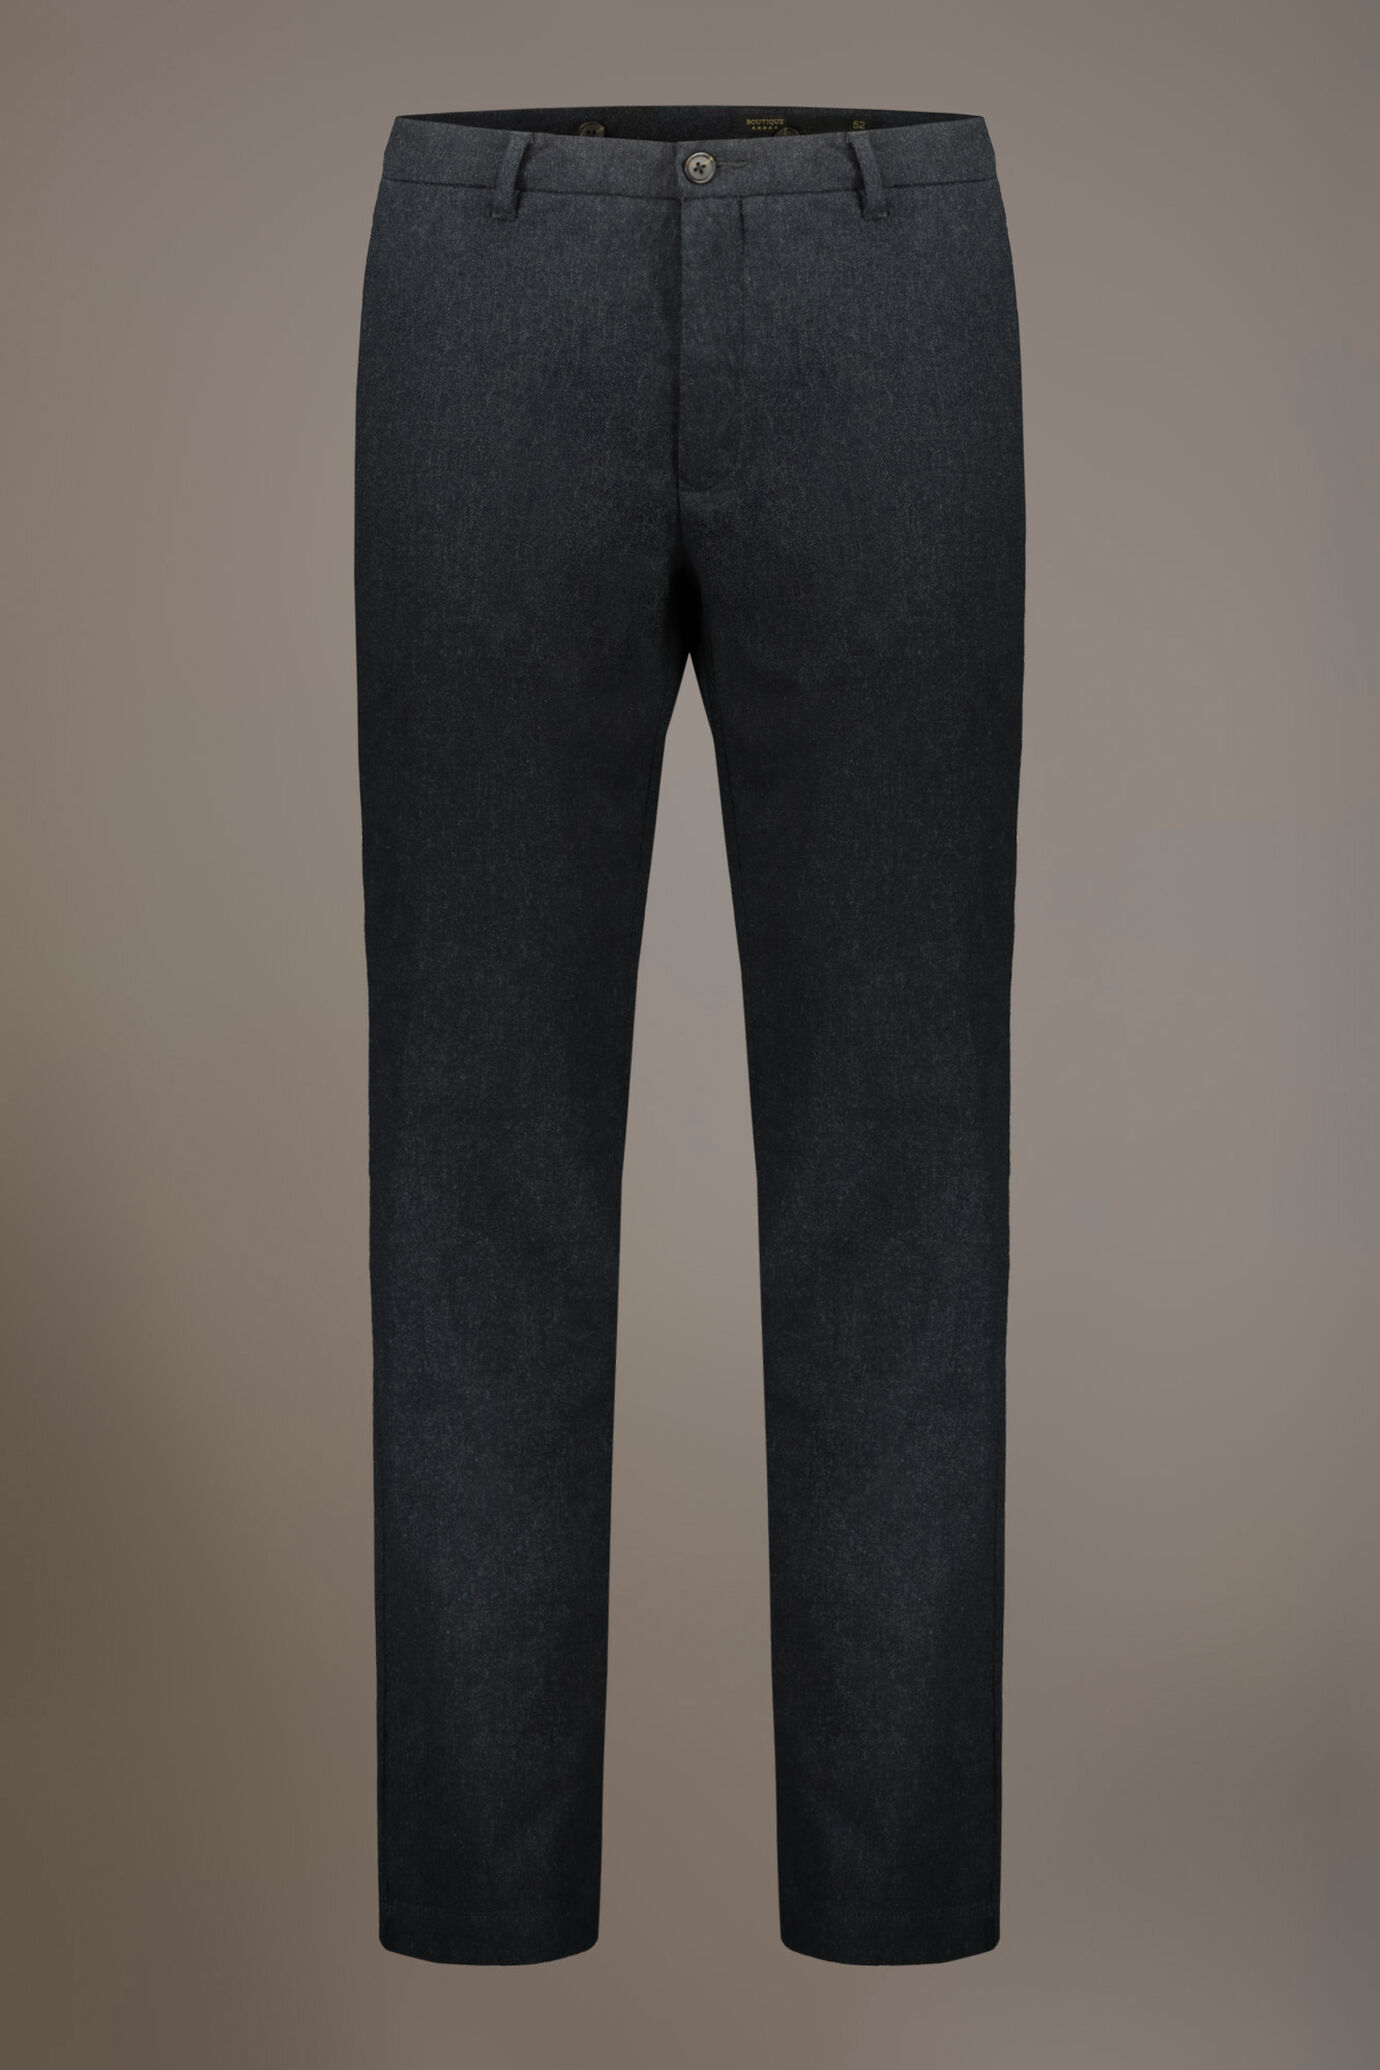 Pantalone chino regular fit tessuto tinto filo melange twill image number 5